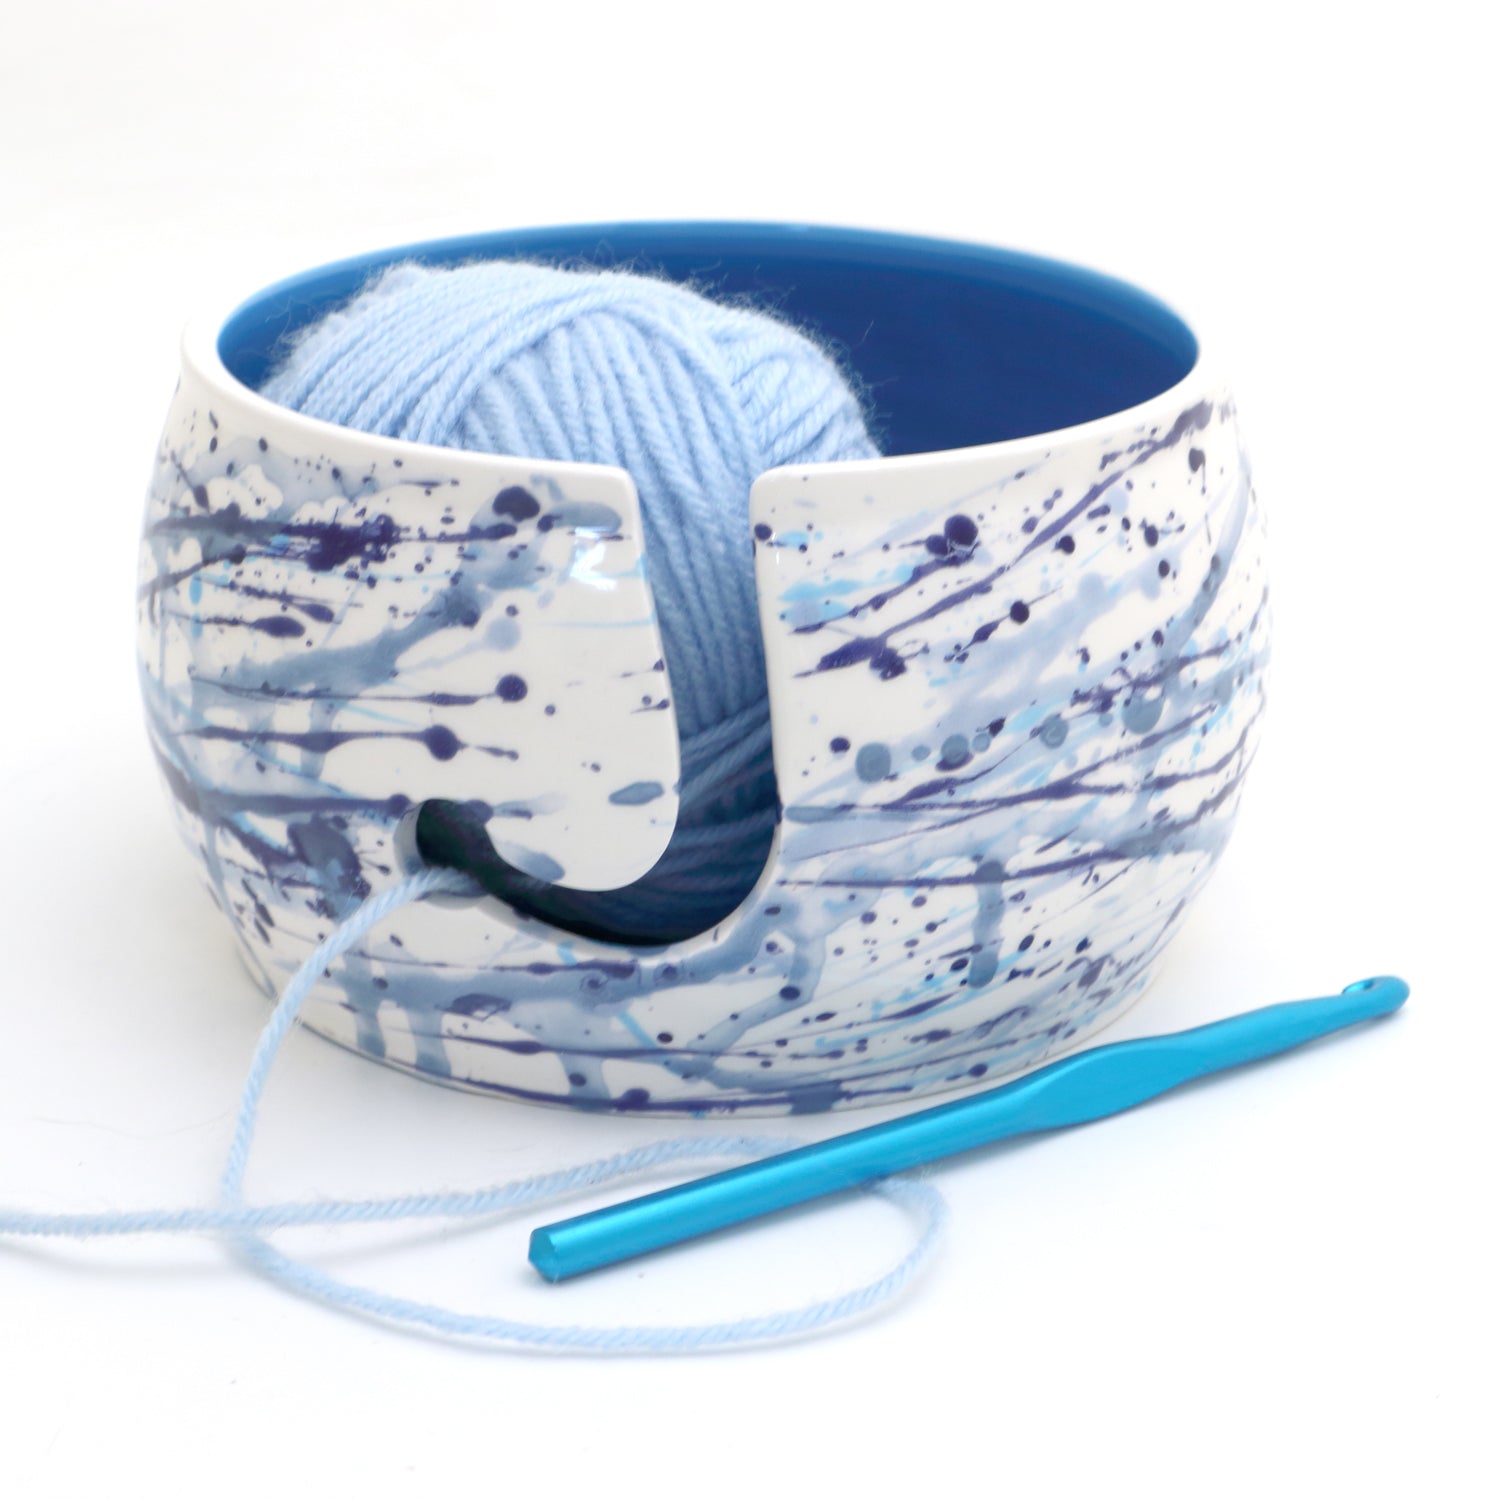 Ceramic Yarn Bowl by Lenny Mud